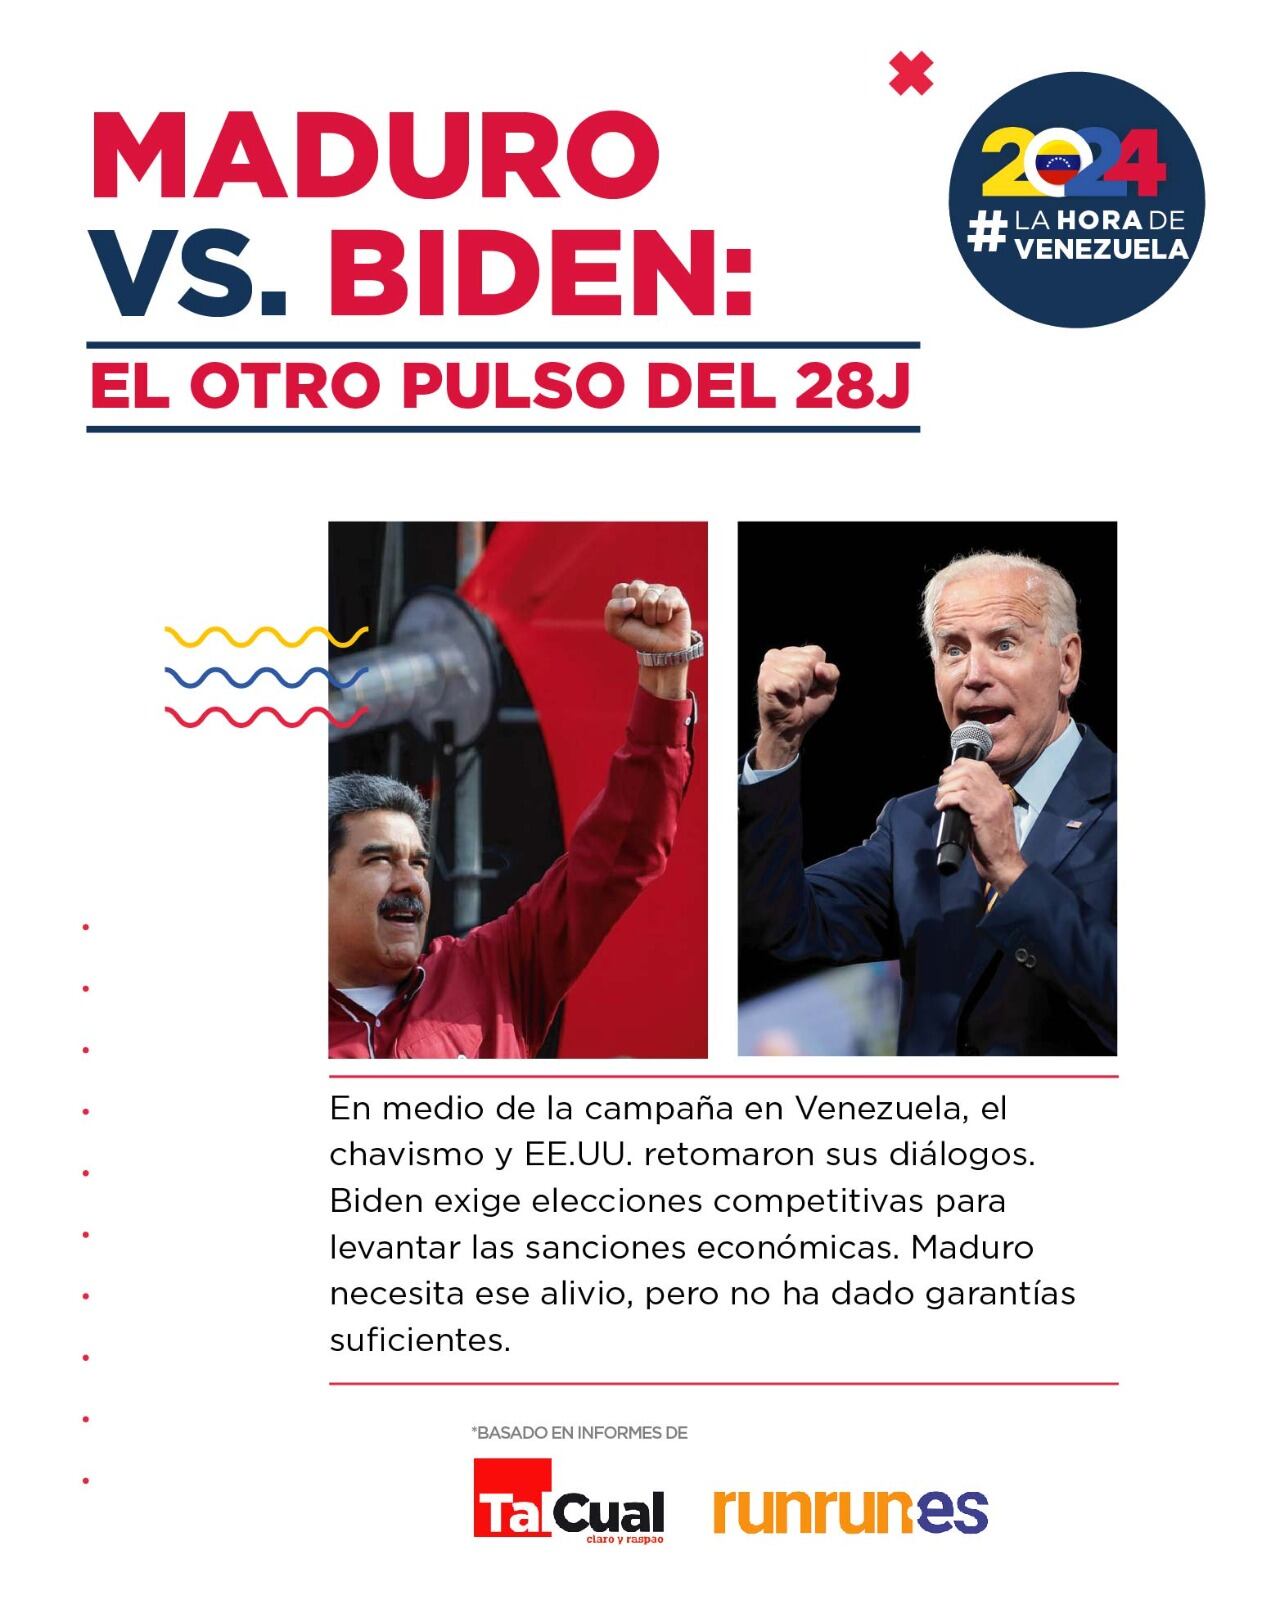 En medio de la campaña en Venezuela, el chavismo y Estados Unidos retoman diálogos.